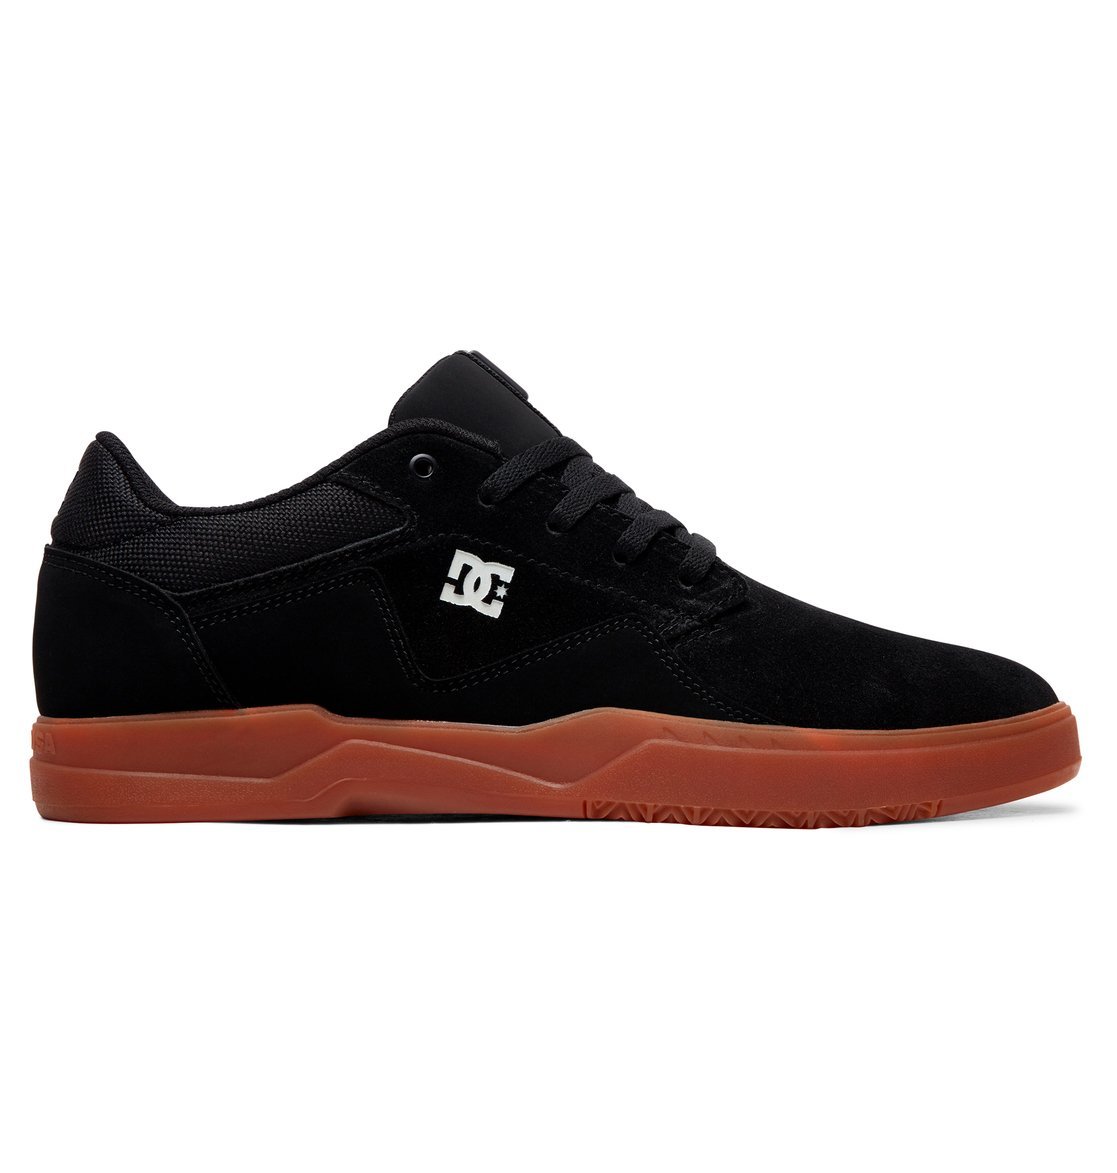 รองเท้า DC Shoes Barksdale - Black/Gum [ADYS100472-BGM]